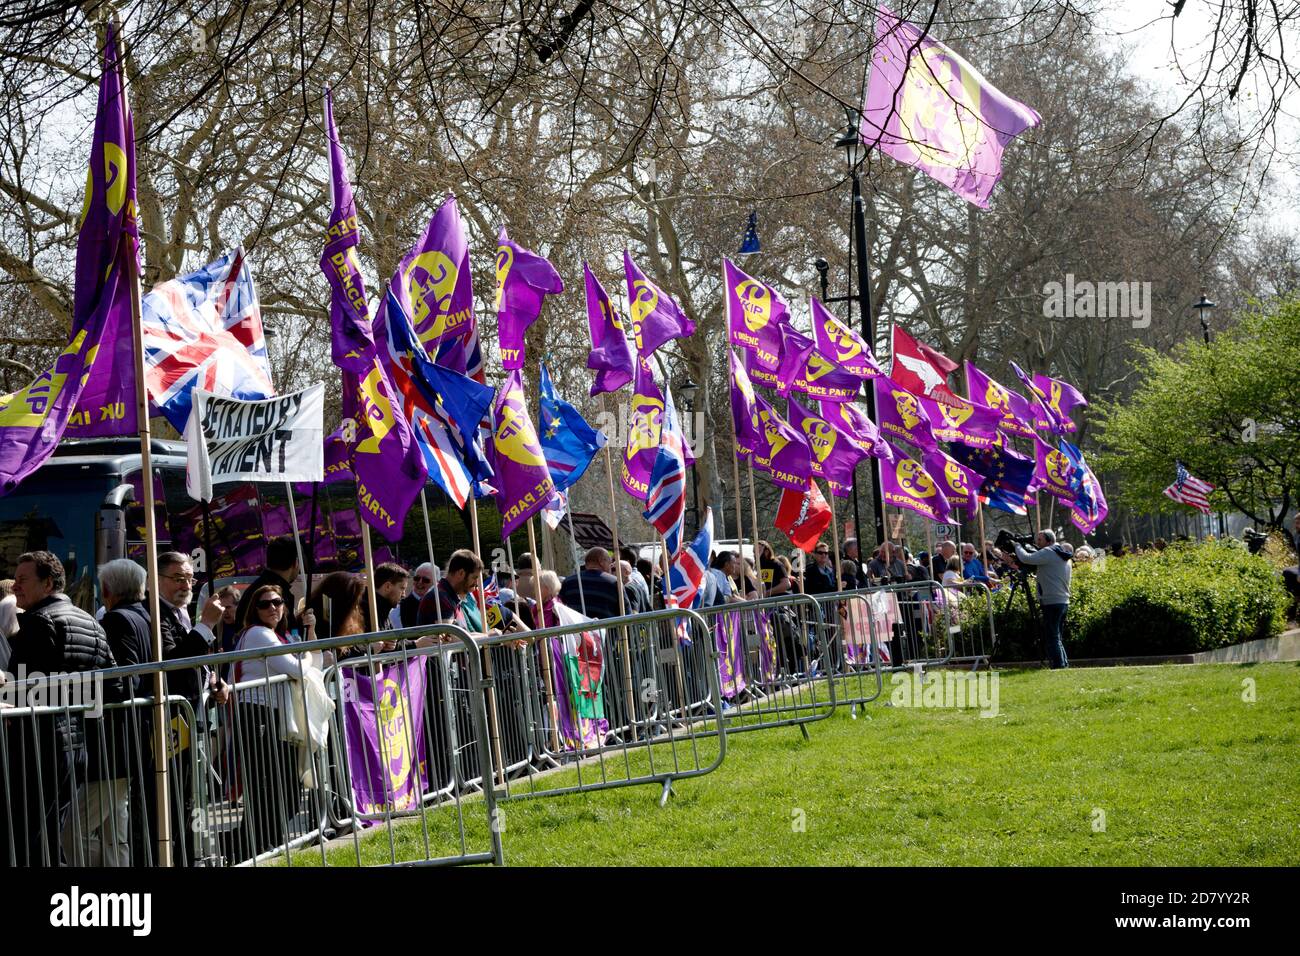 Londra, Regno Unito, 29 marzo 2019:- manifestanti Pro Brexit fuori dal Parlamento britannico il giorno in cui il Regno Unito avrebbe dovuto lasciare l’Unione europea f Foto Stock